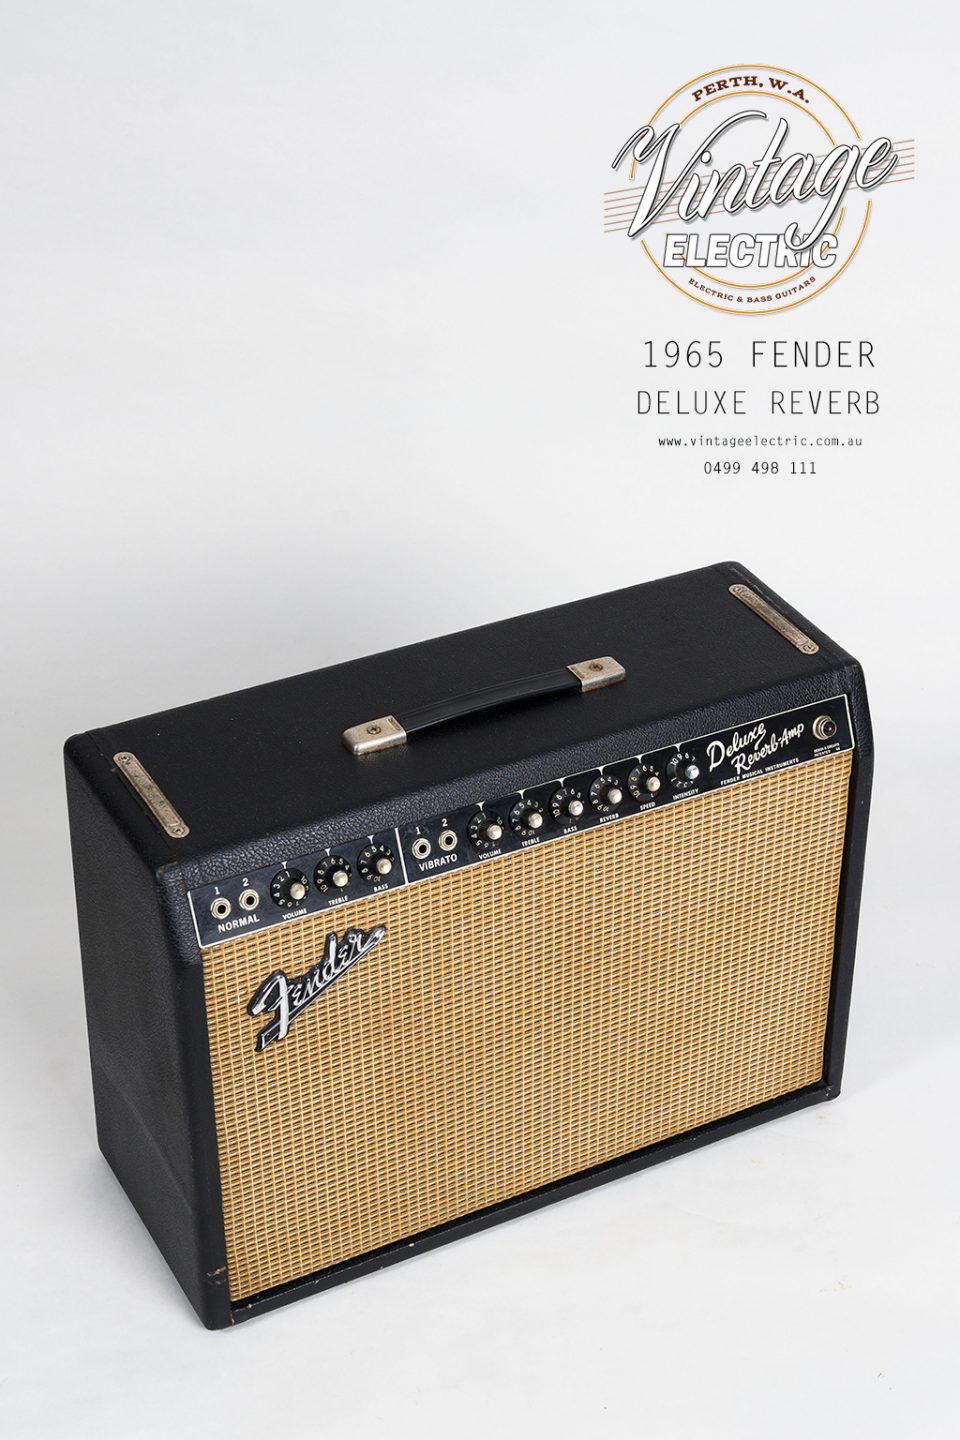 1965 Fender Deluxe Reverb Blackface Top